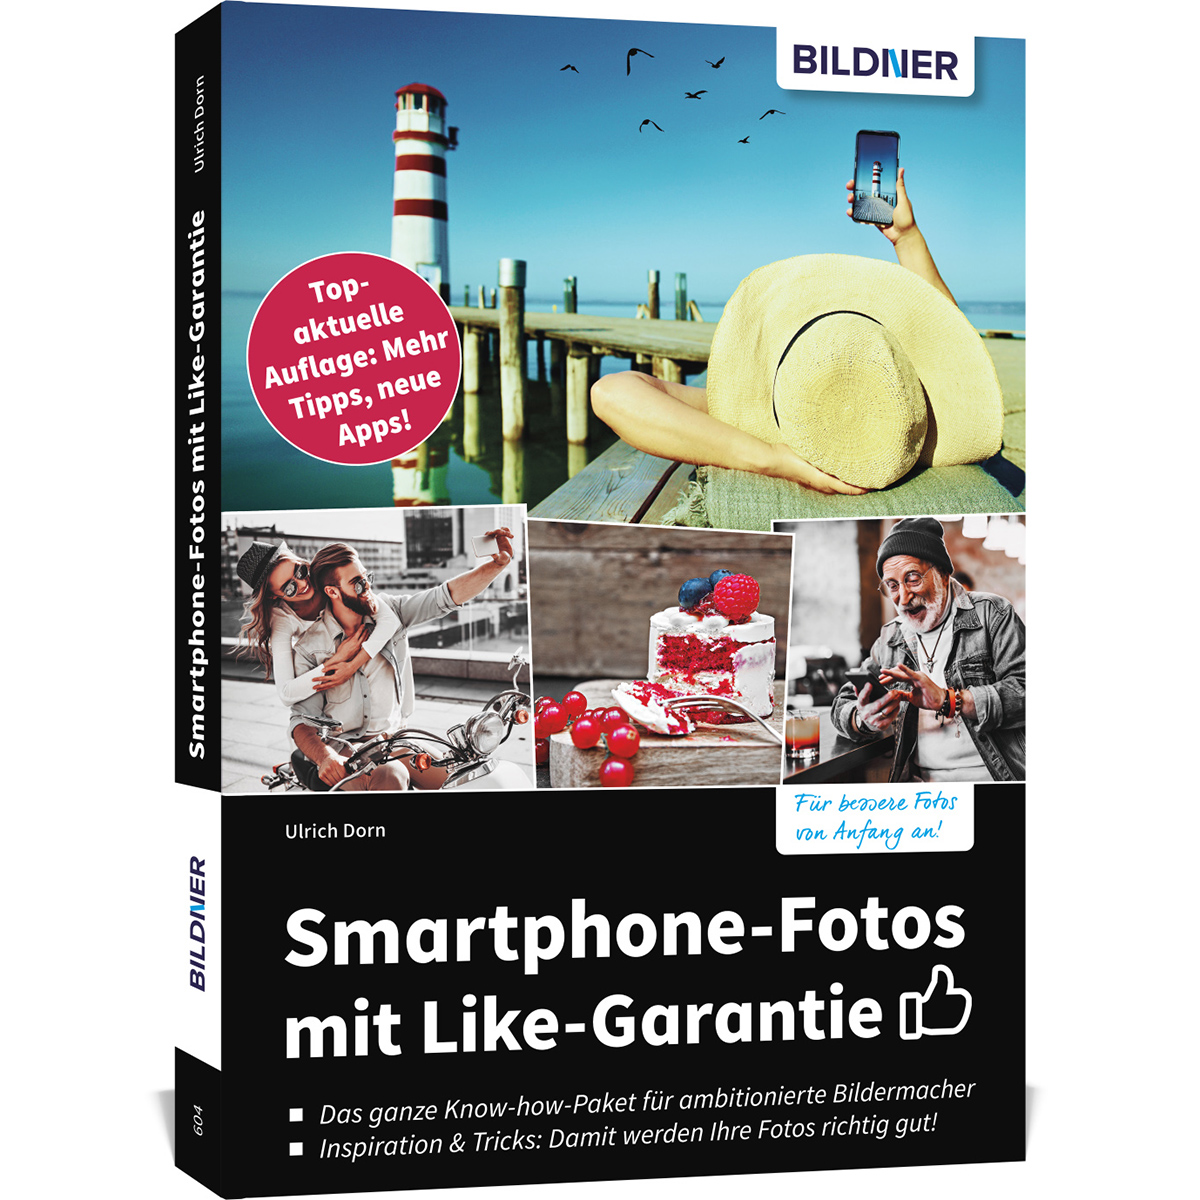 Smartphone-Fotos mit Like-Garantie Topaktuelle Tipps, - Mehr Apps! Auflage: neue